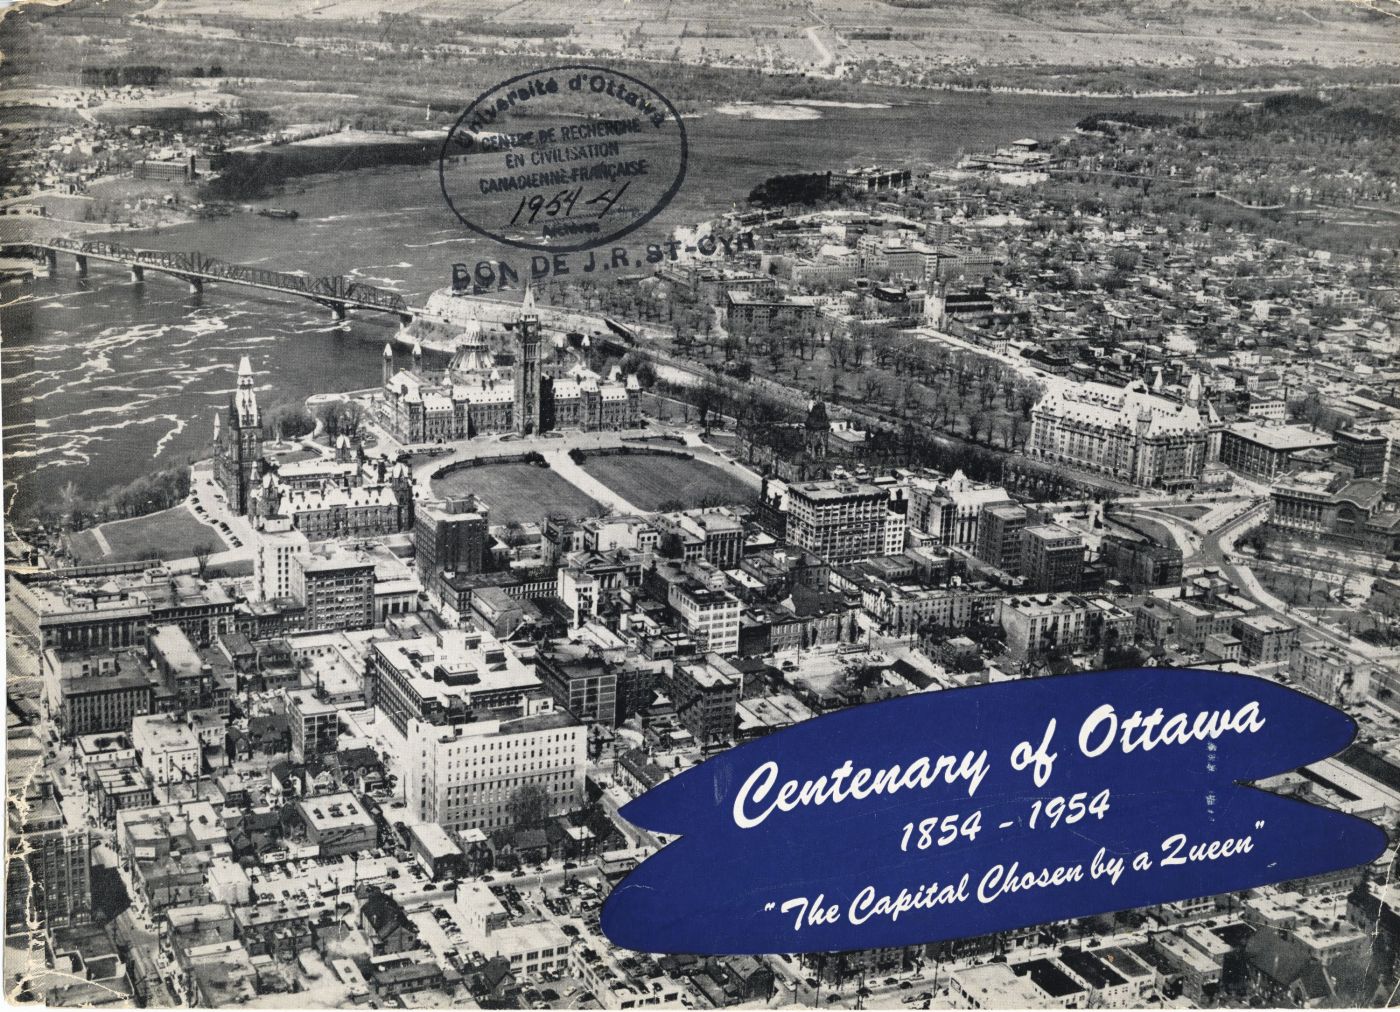 Photographie en noir et blanc qui montre une vue aérienne rapprochée du centre-ville d’Ottawa avec, au centre, les édifices du Parlement. Texte dactylographié en anglais.